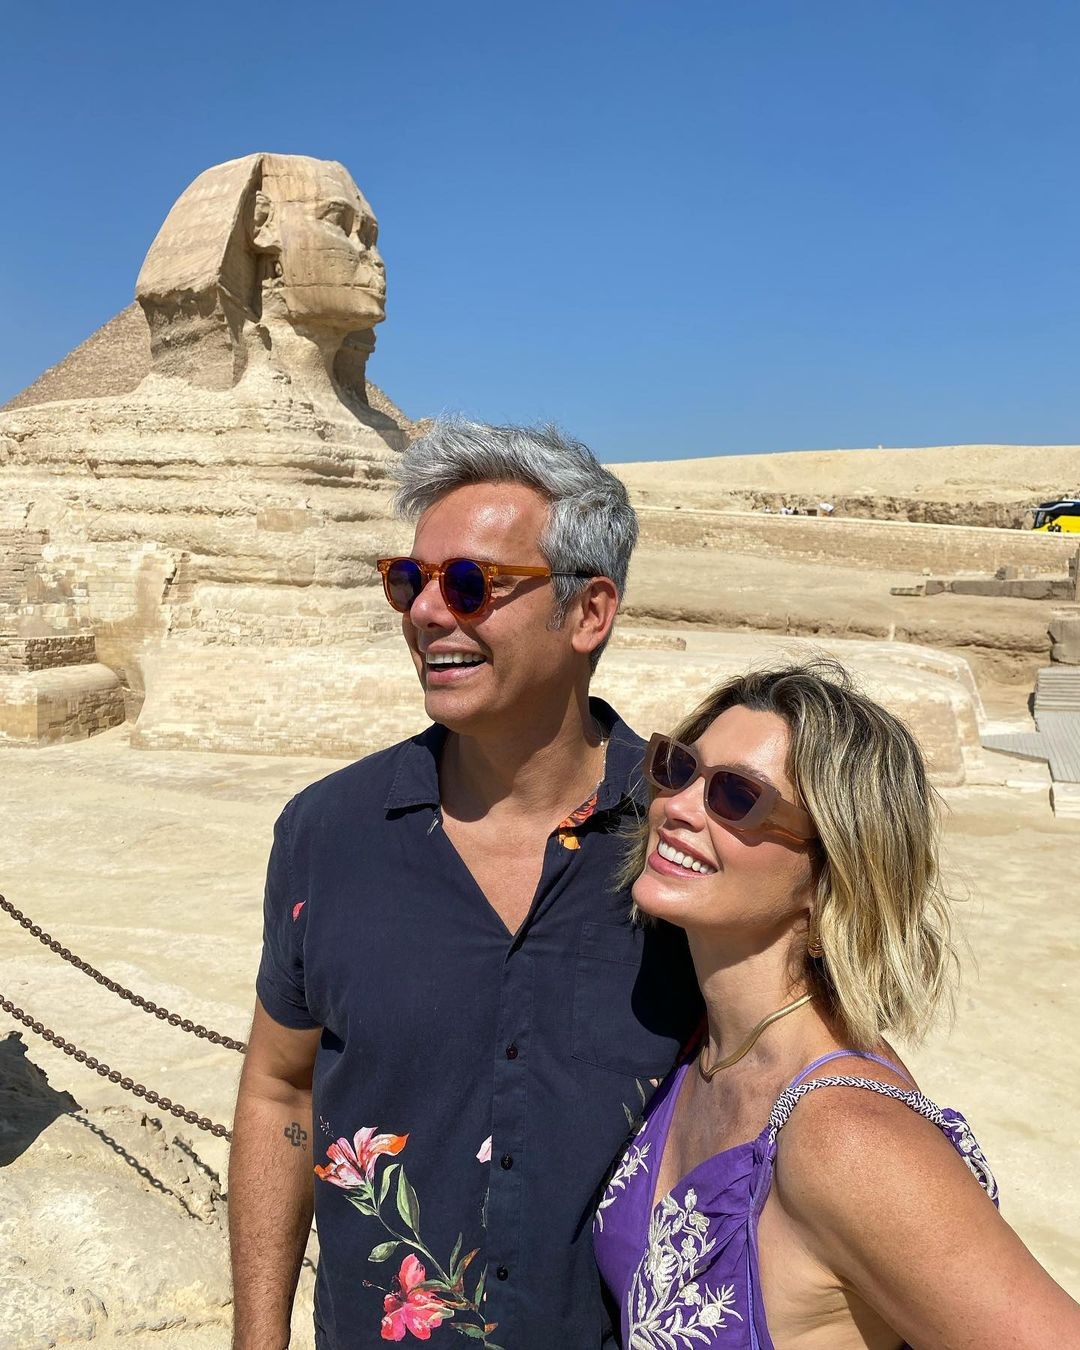 Otaviano Costa publica álbum de fotos com Flávia Alessandra no Egito (Foto: Reprodução / Instagram)